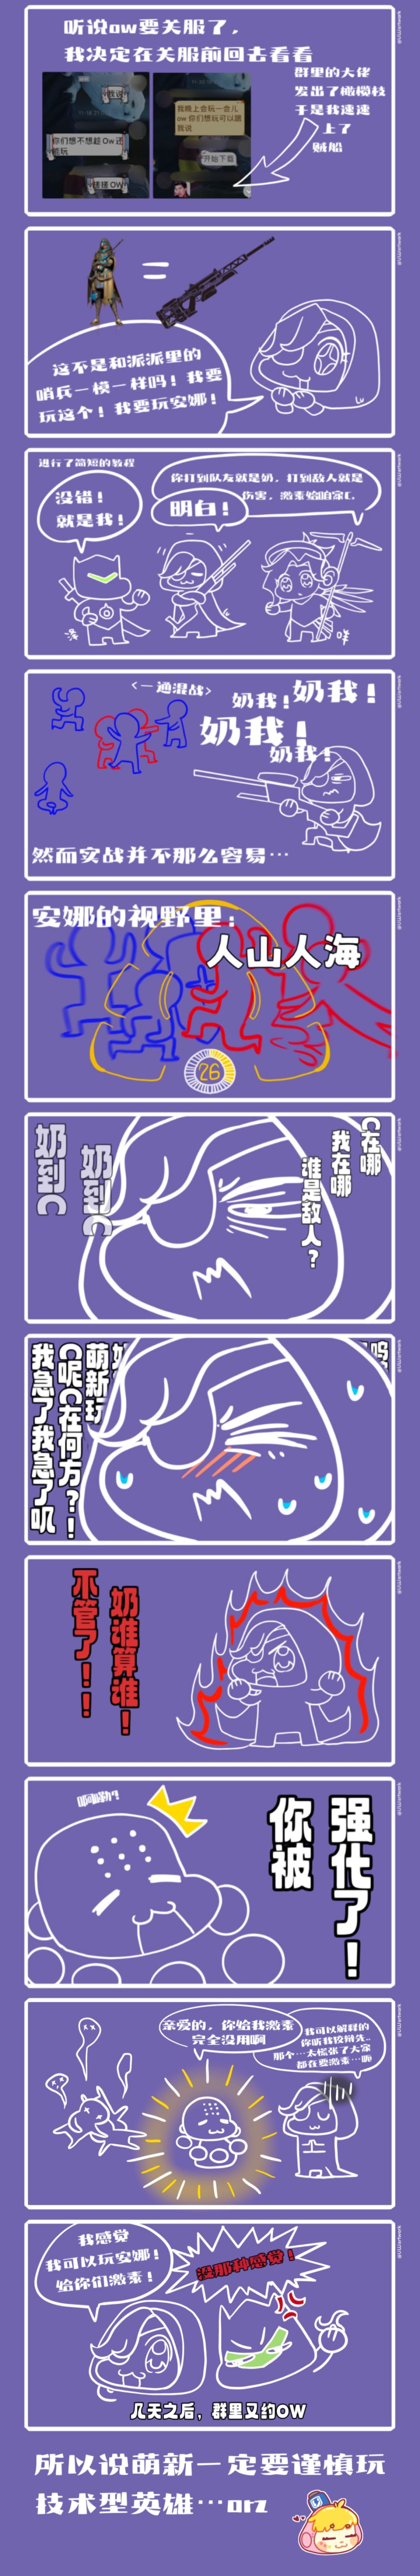 【漫畫】一個萌新奶的故事-第12張